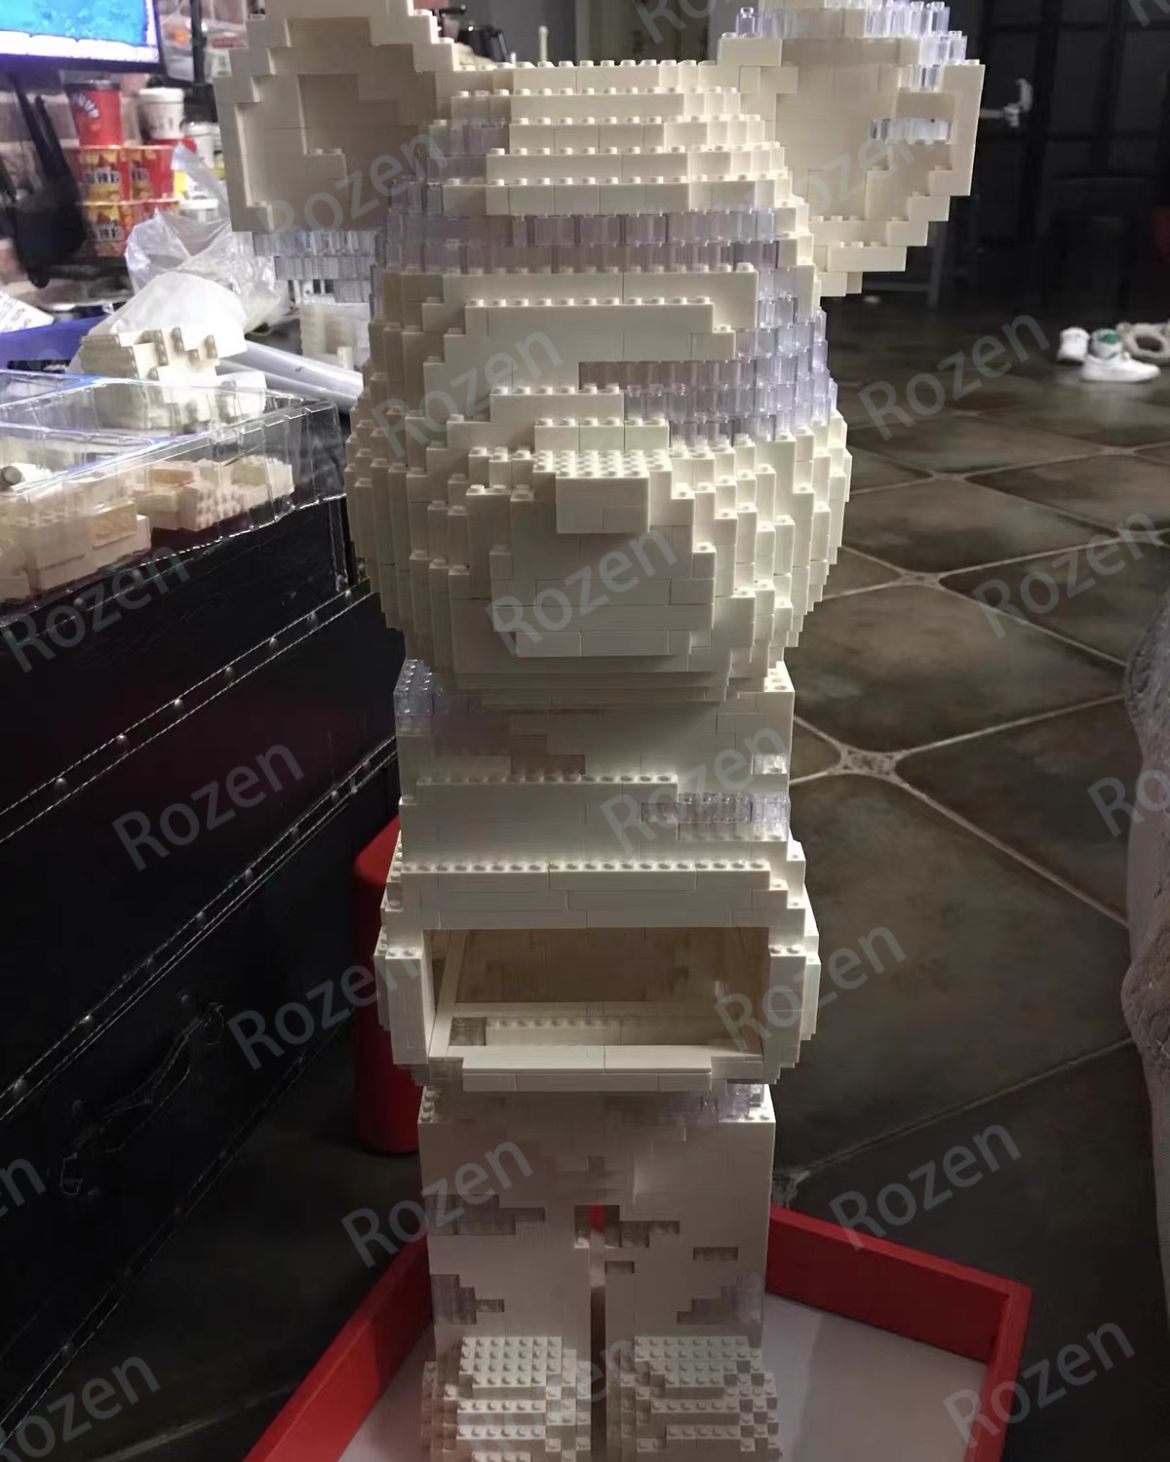 Bearbrick ベアブリック1000% レゴ互換品 LED 付き - メルカリ